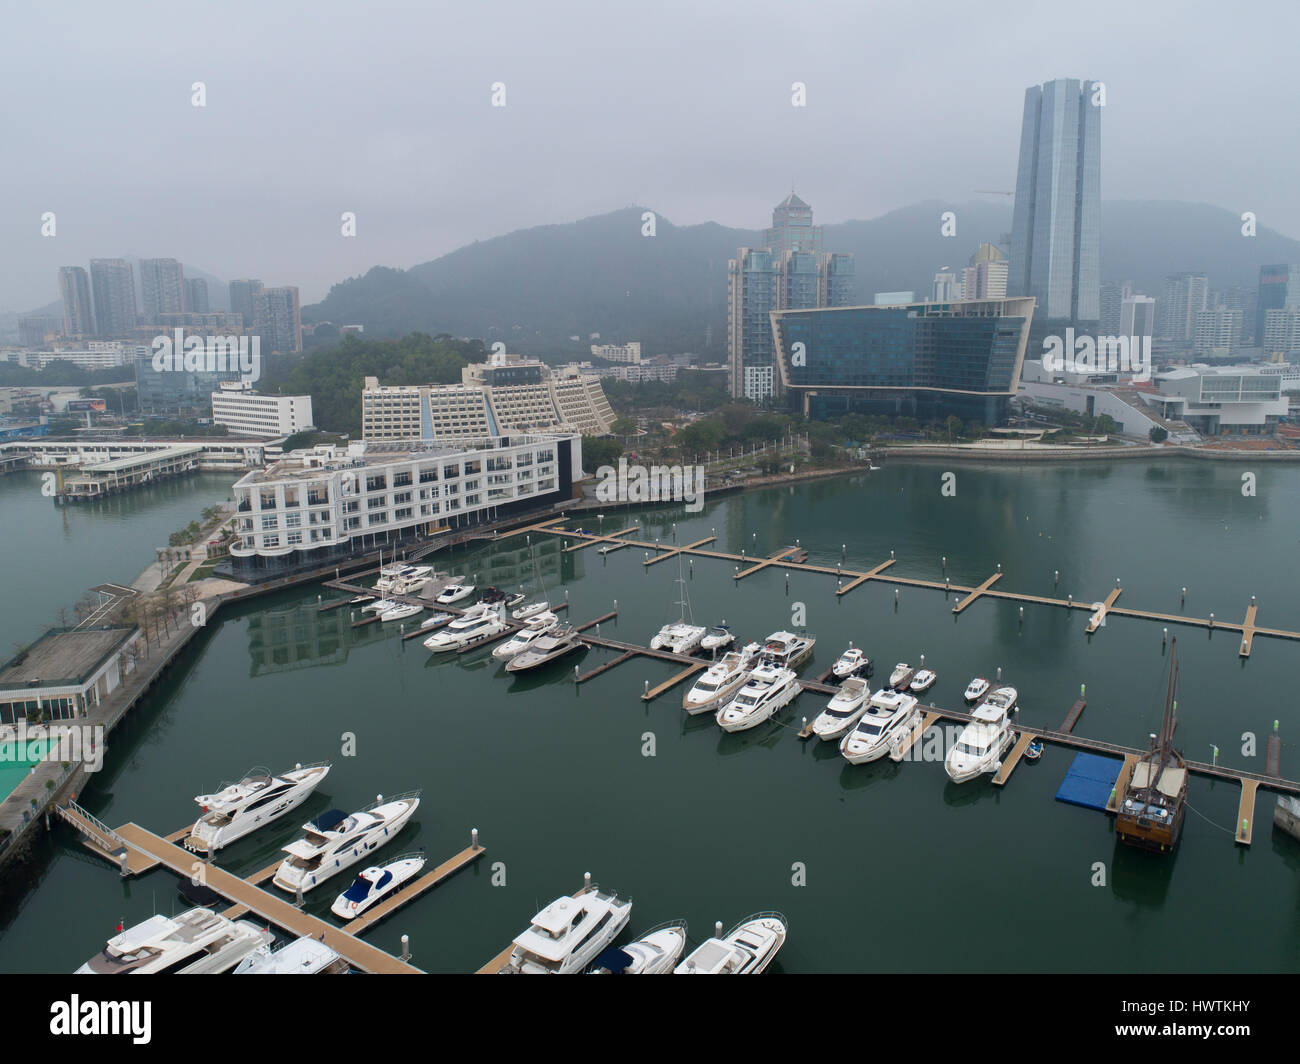 Vue générale du port de Shekou, y compris l'hôtel Sheraton, Hilton hotel, China Merchants' bâtiment et location de quai. Shenzhen, Chine Banque D'Images